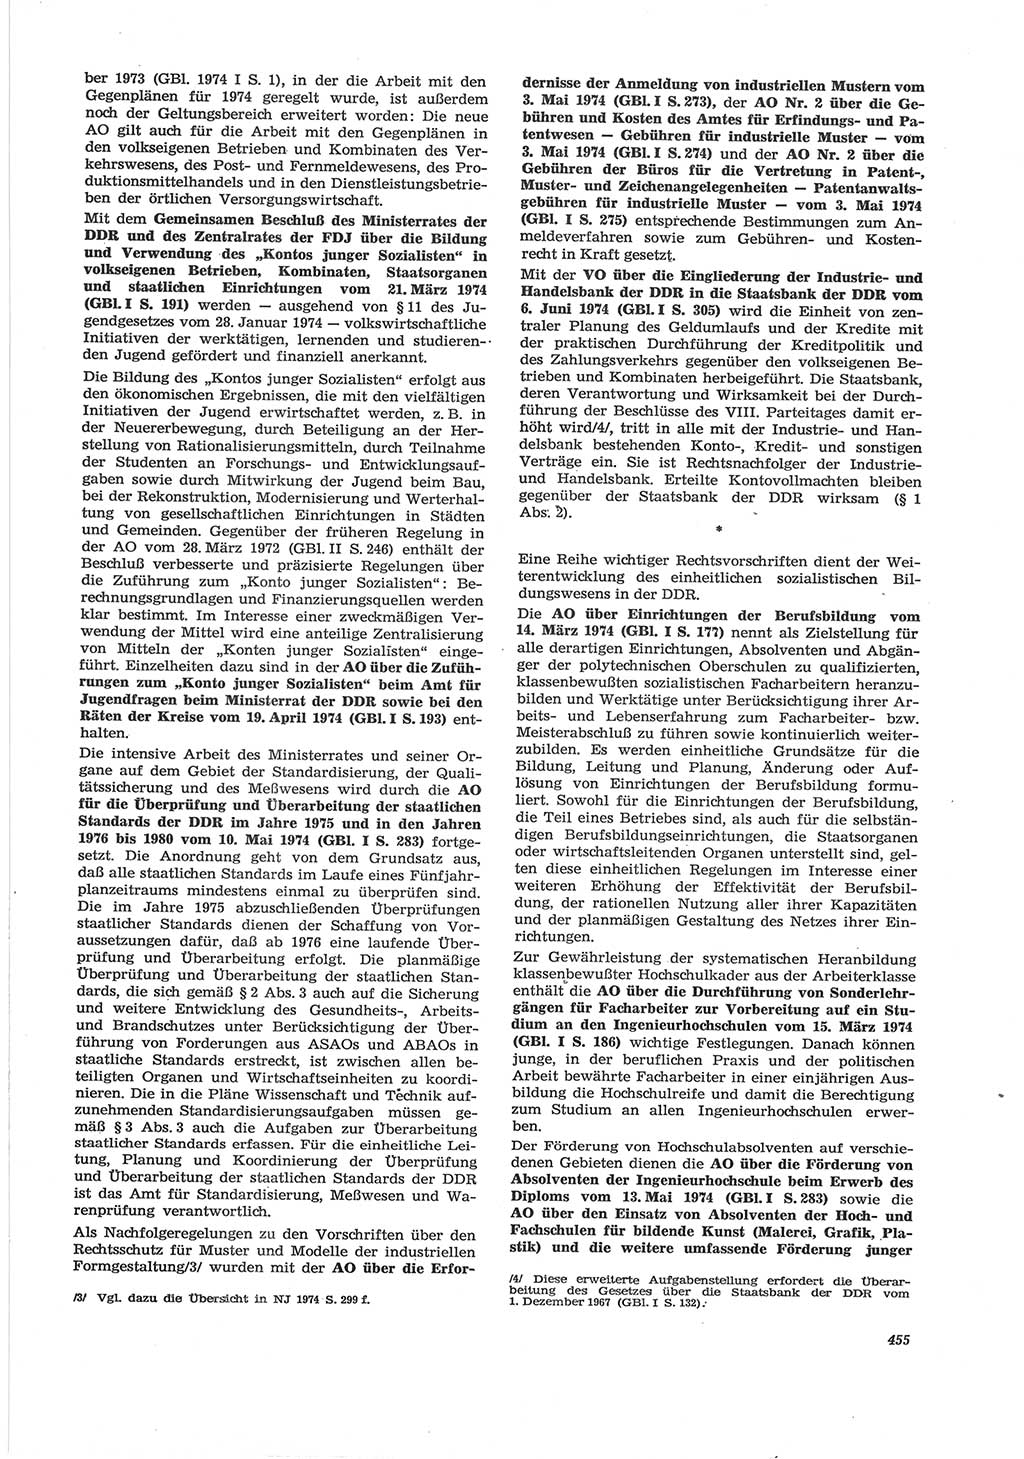 Neue Justiz (NJ), Zeitschrift für Recht und Rechtswissenschaft [Deutsche Demokratische Republik (DDR)], 28. Jahrgang 1974, Seite 455 (NJ DDR 1974, S. 455)